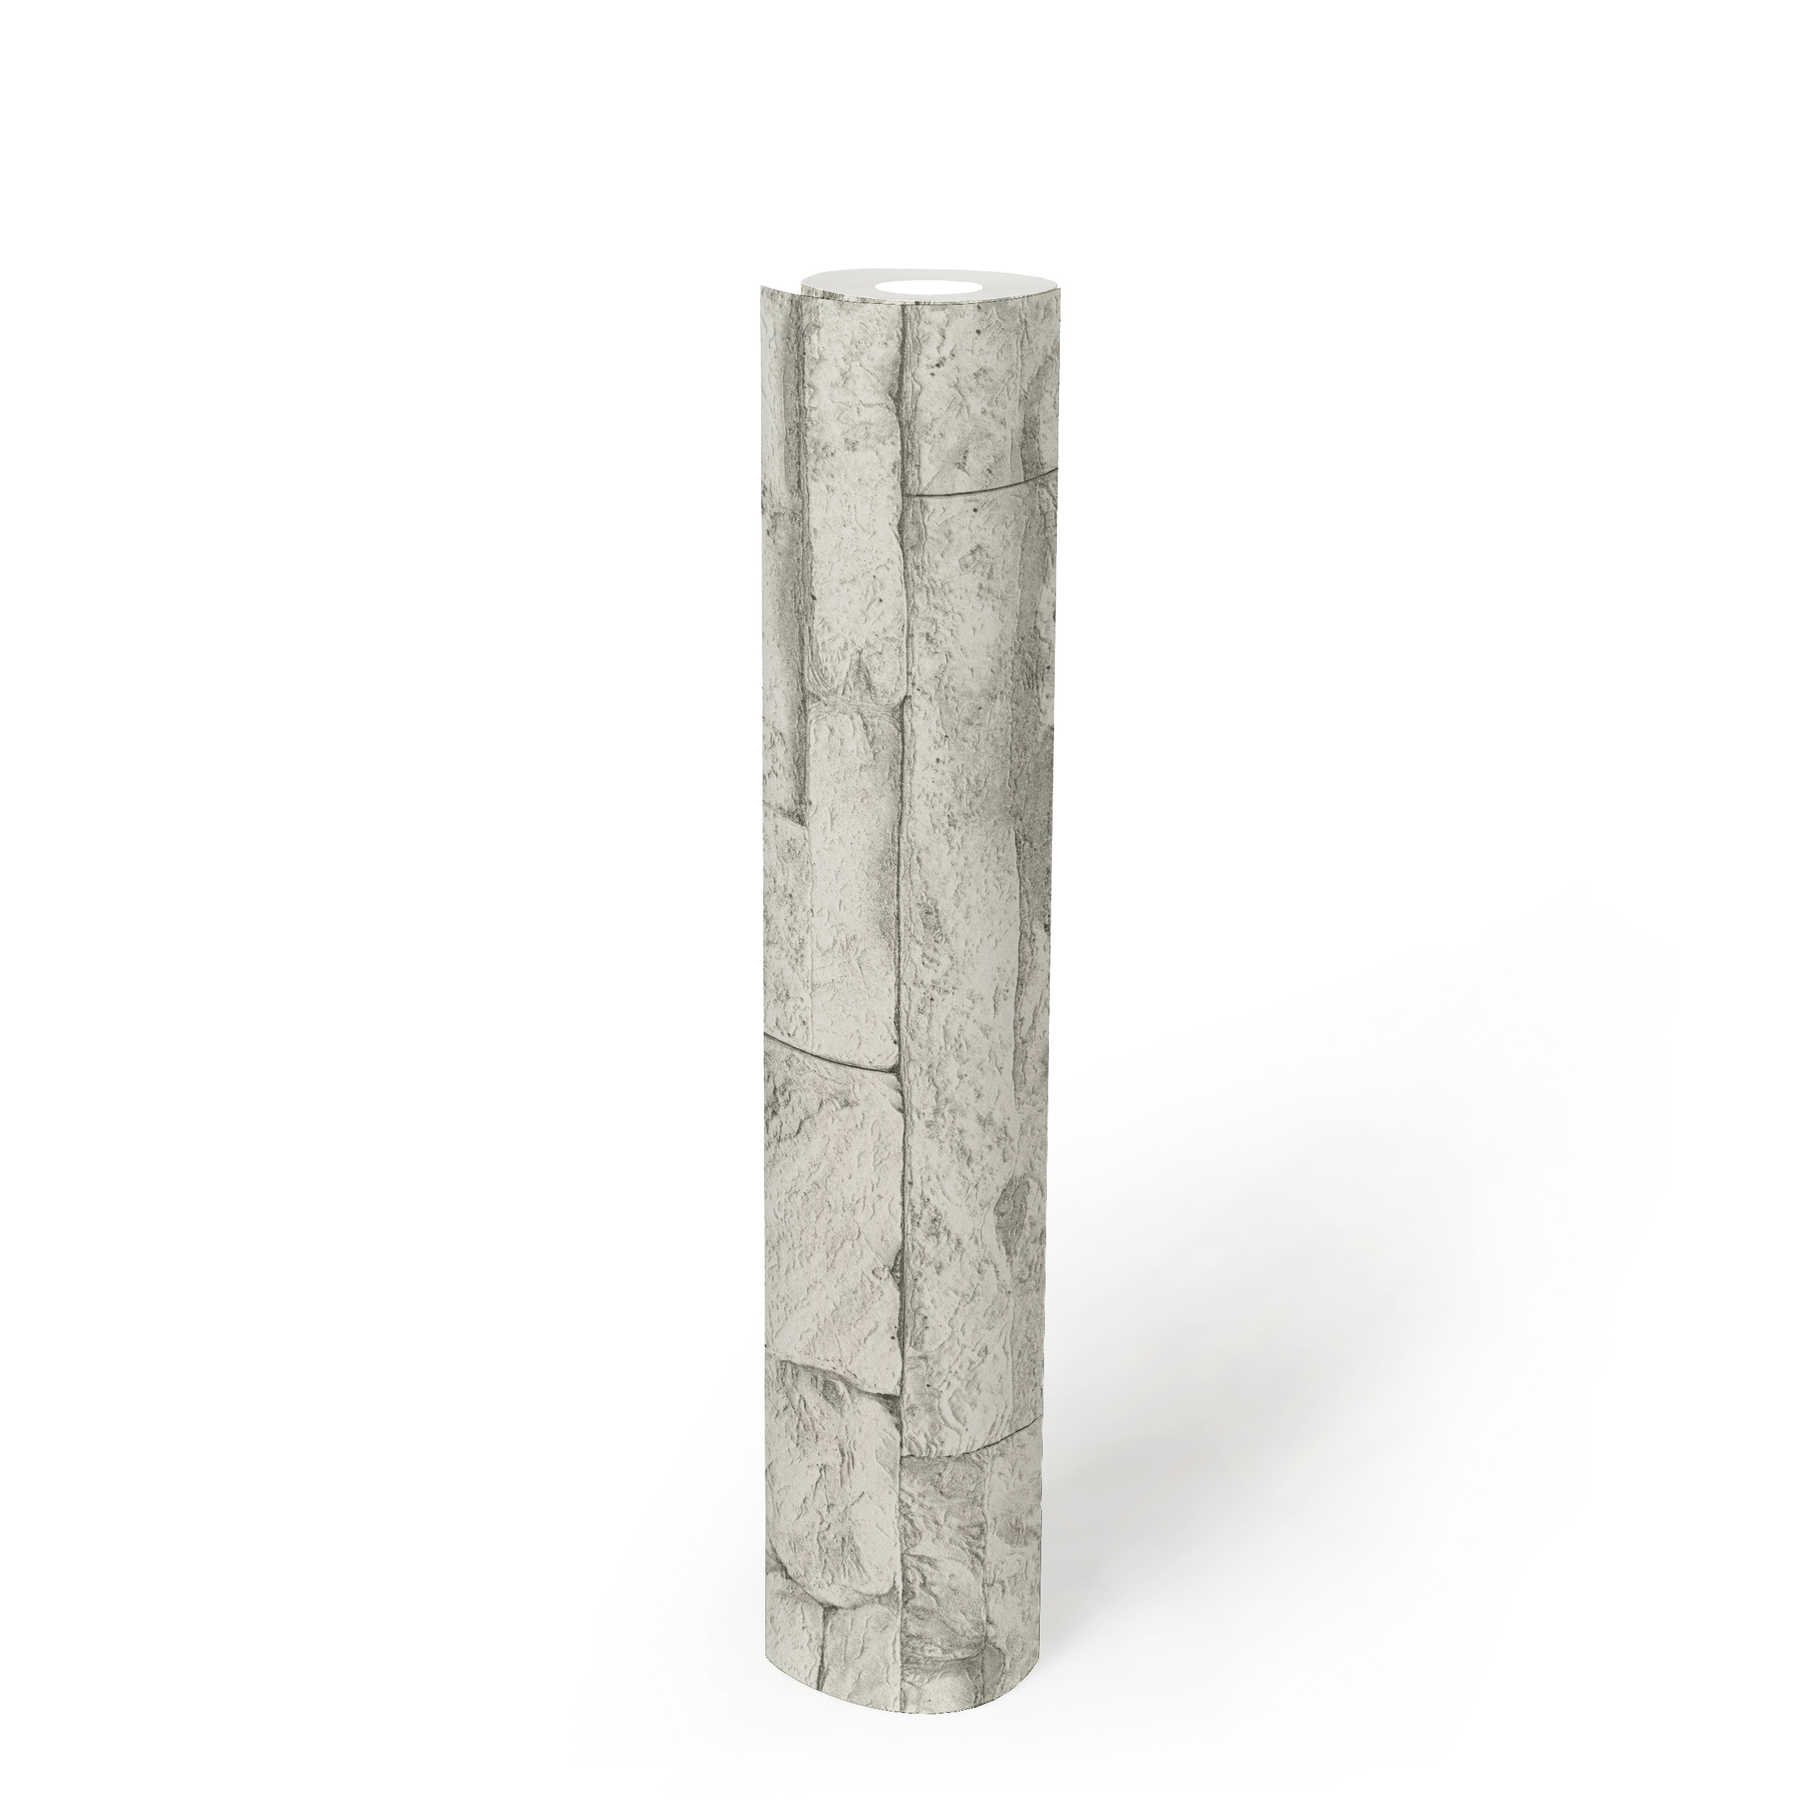             Tapete mit hellem Mauerwerk aus Natursteinen – Weiß, Grau
        